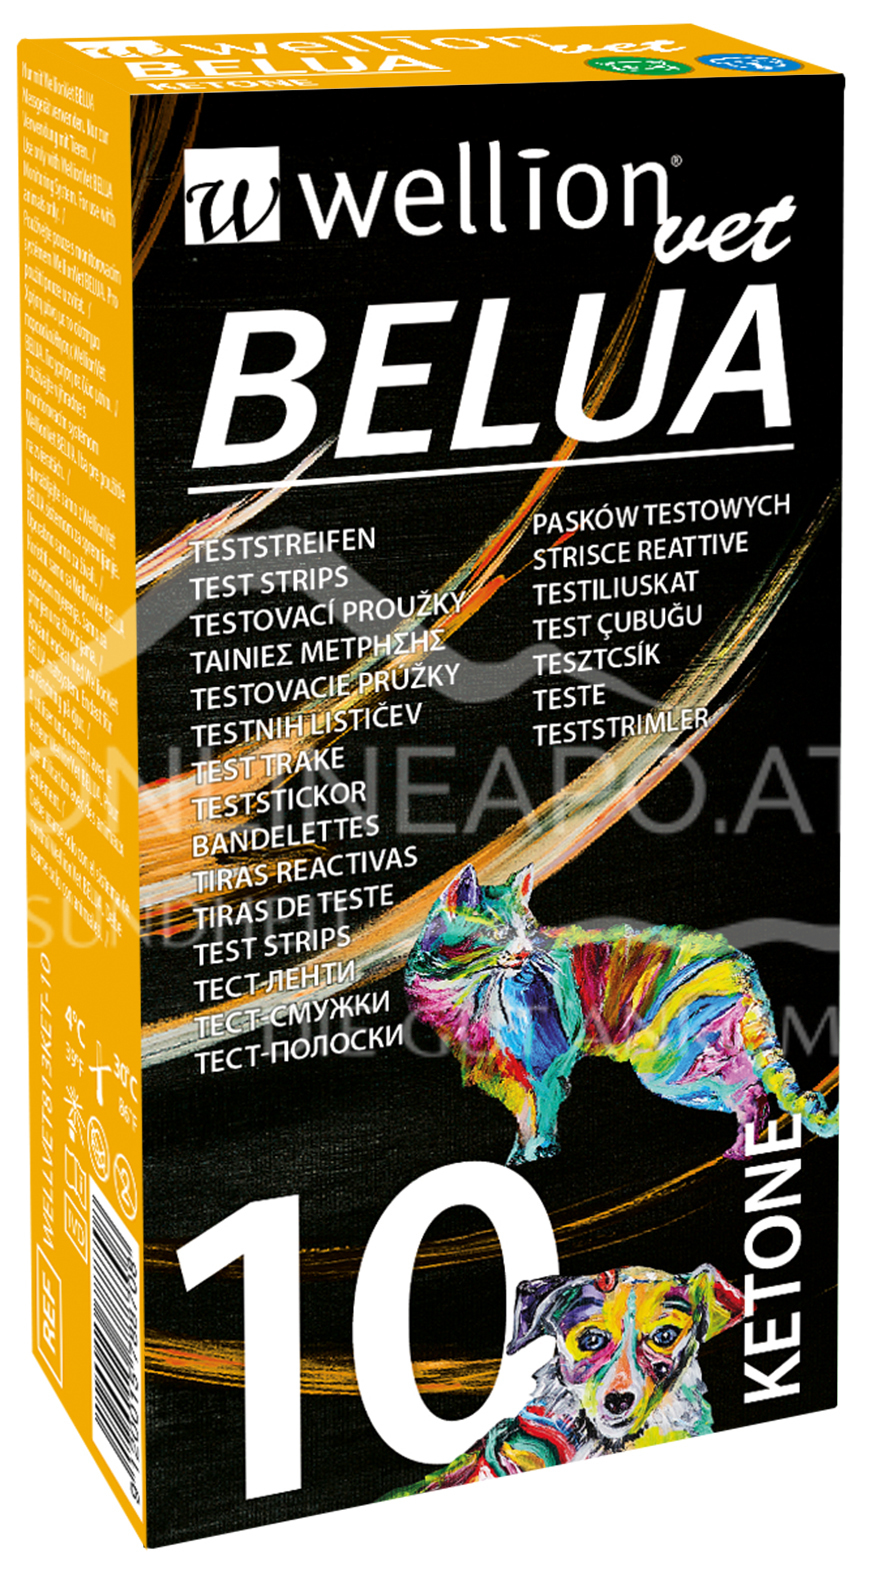 WellionVet® BELUA Ketonteststreifen Hunde/Katzen